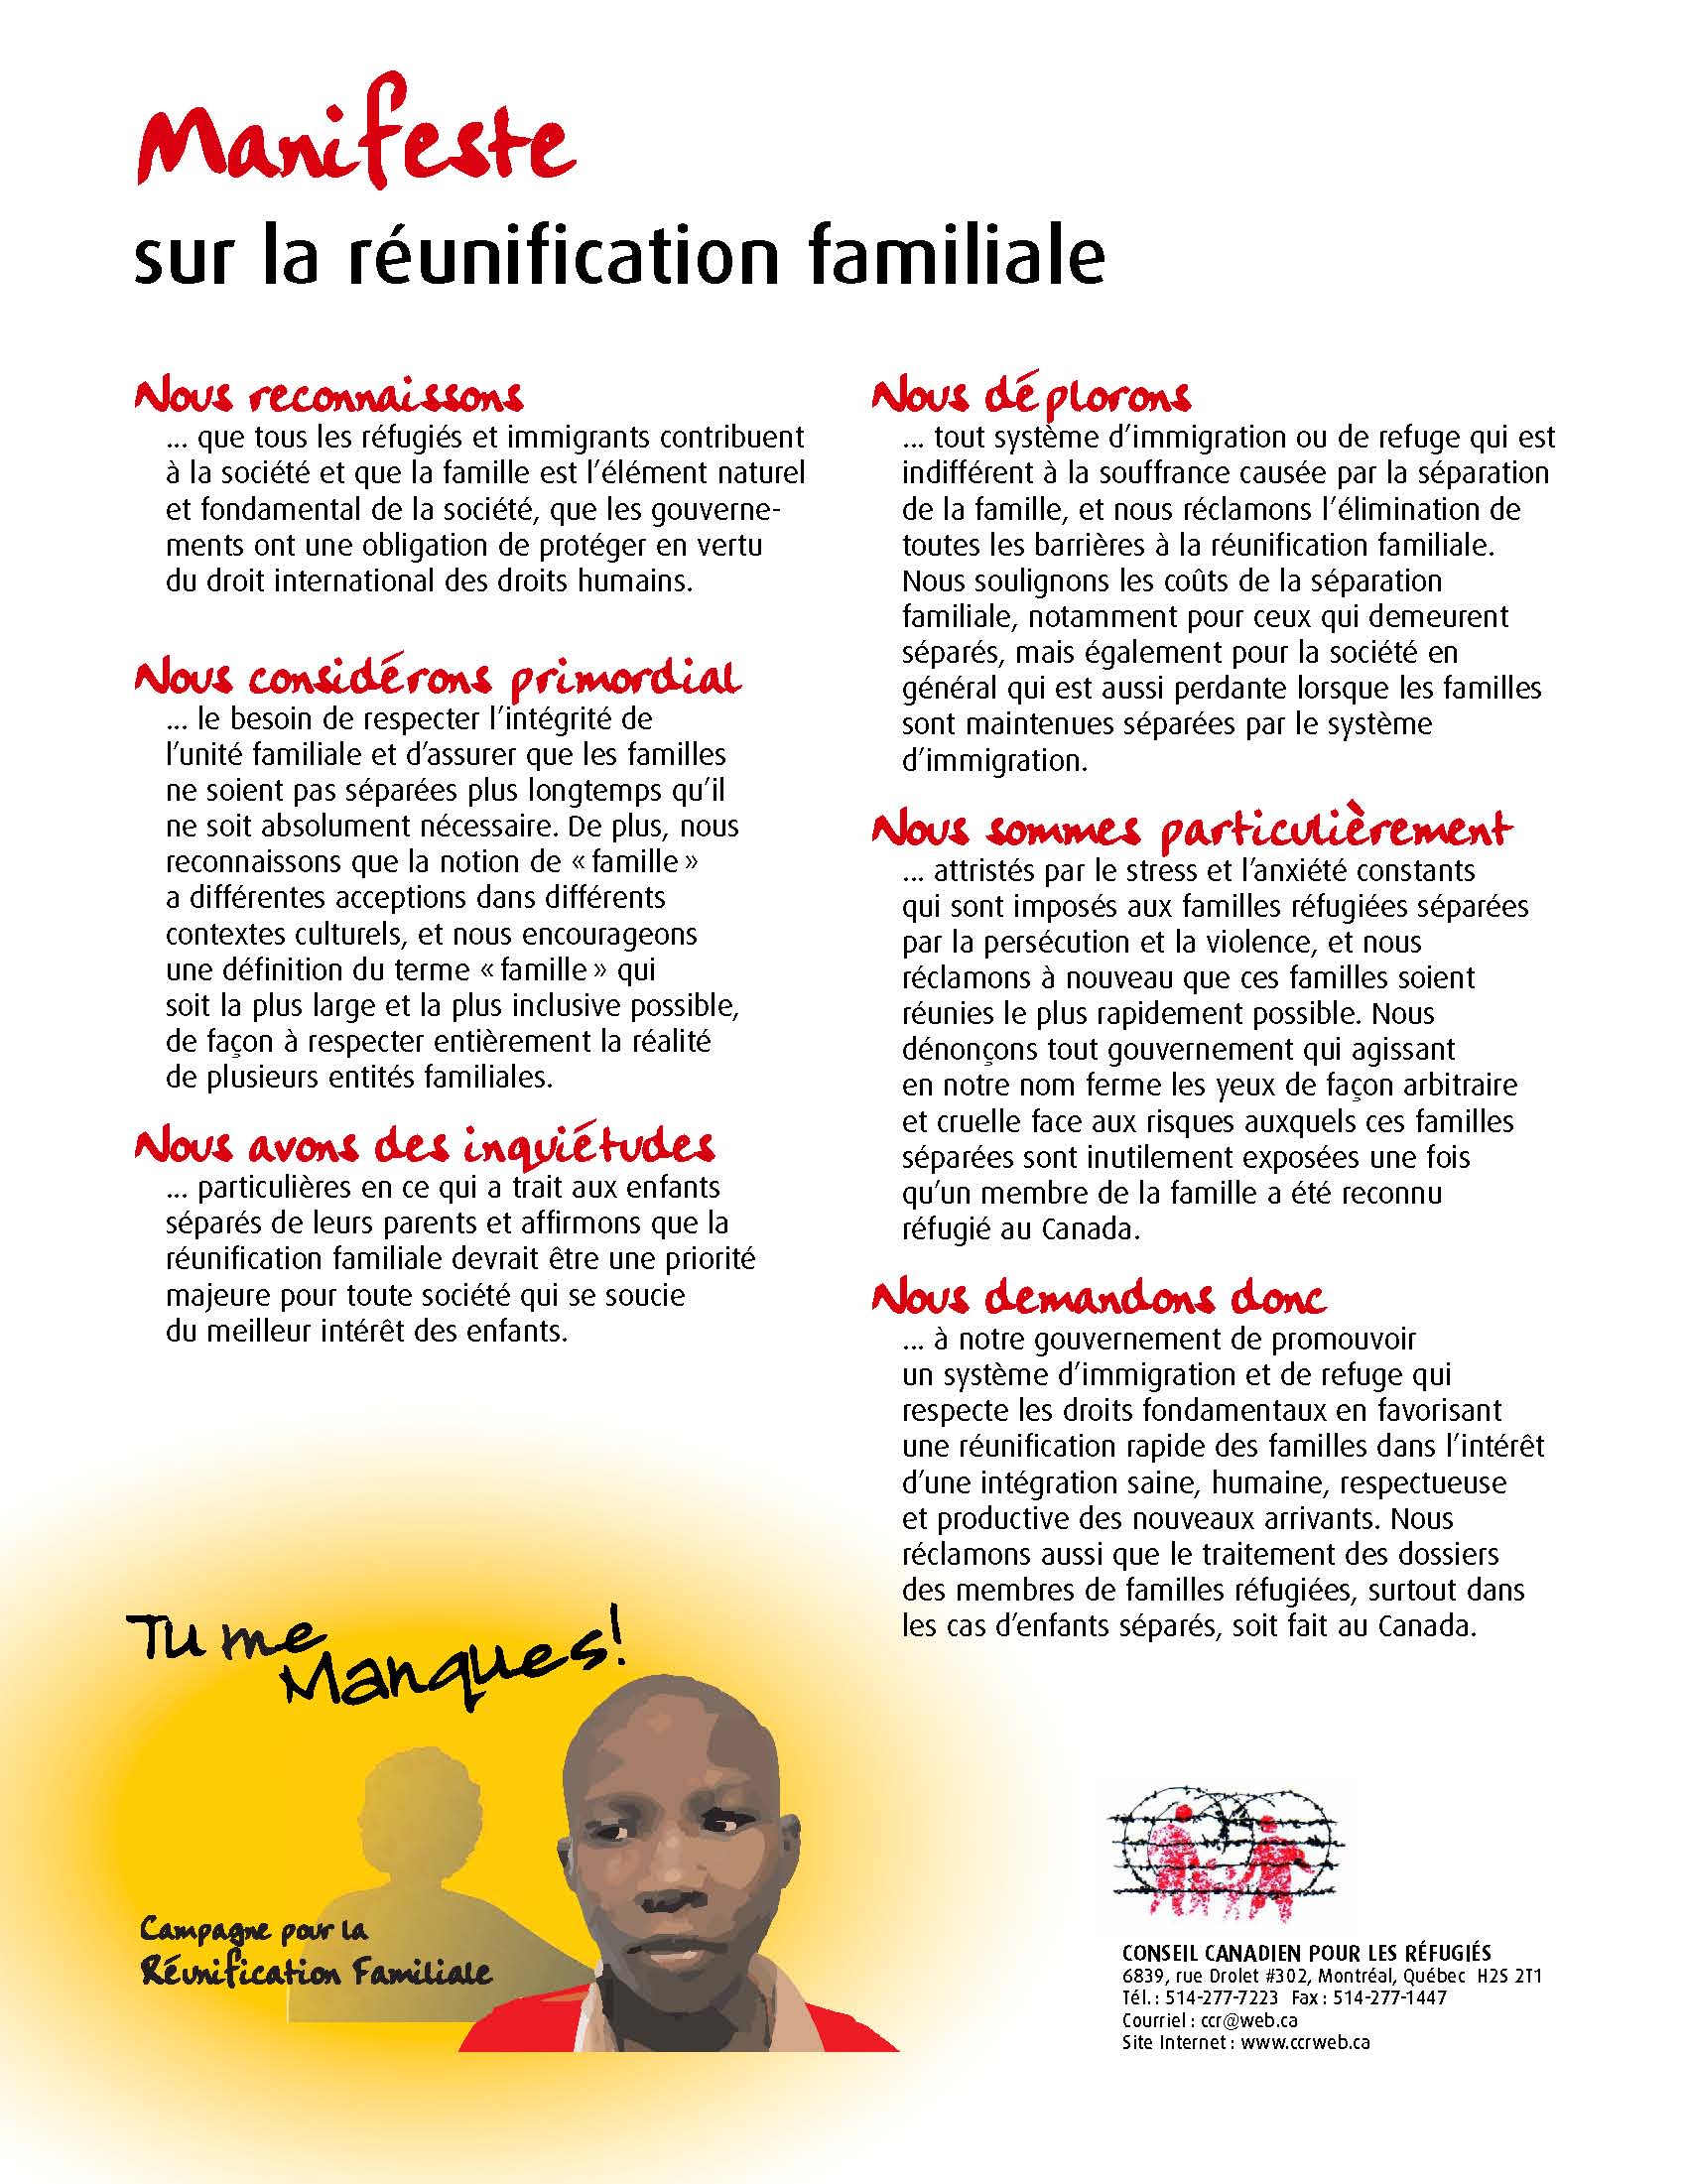 Manifeste sur la réunification familiale | Canadian Council for Refugees